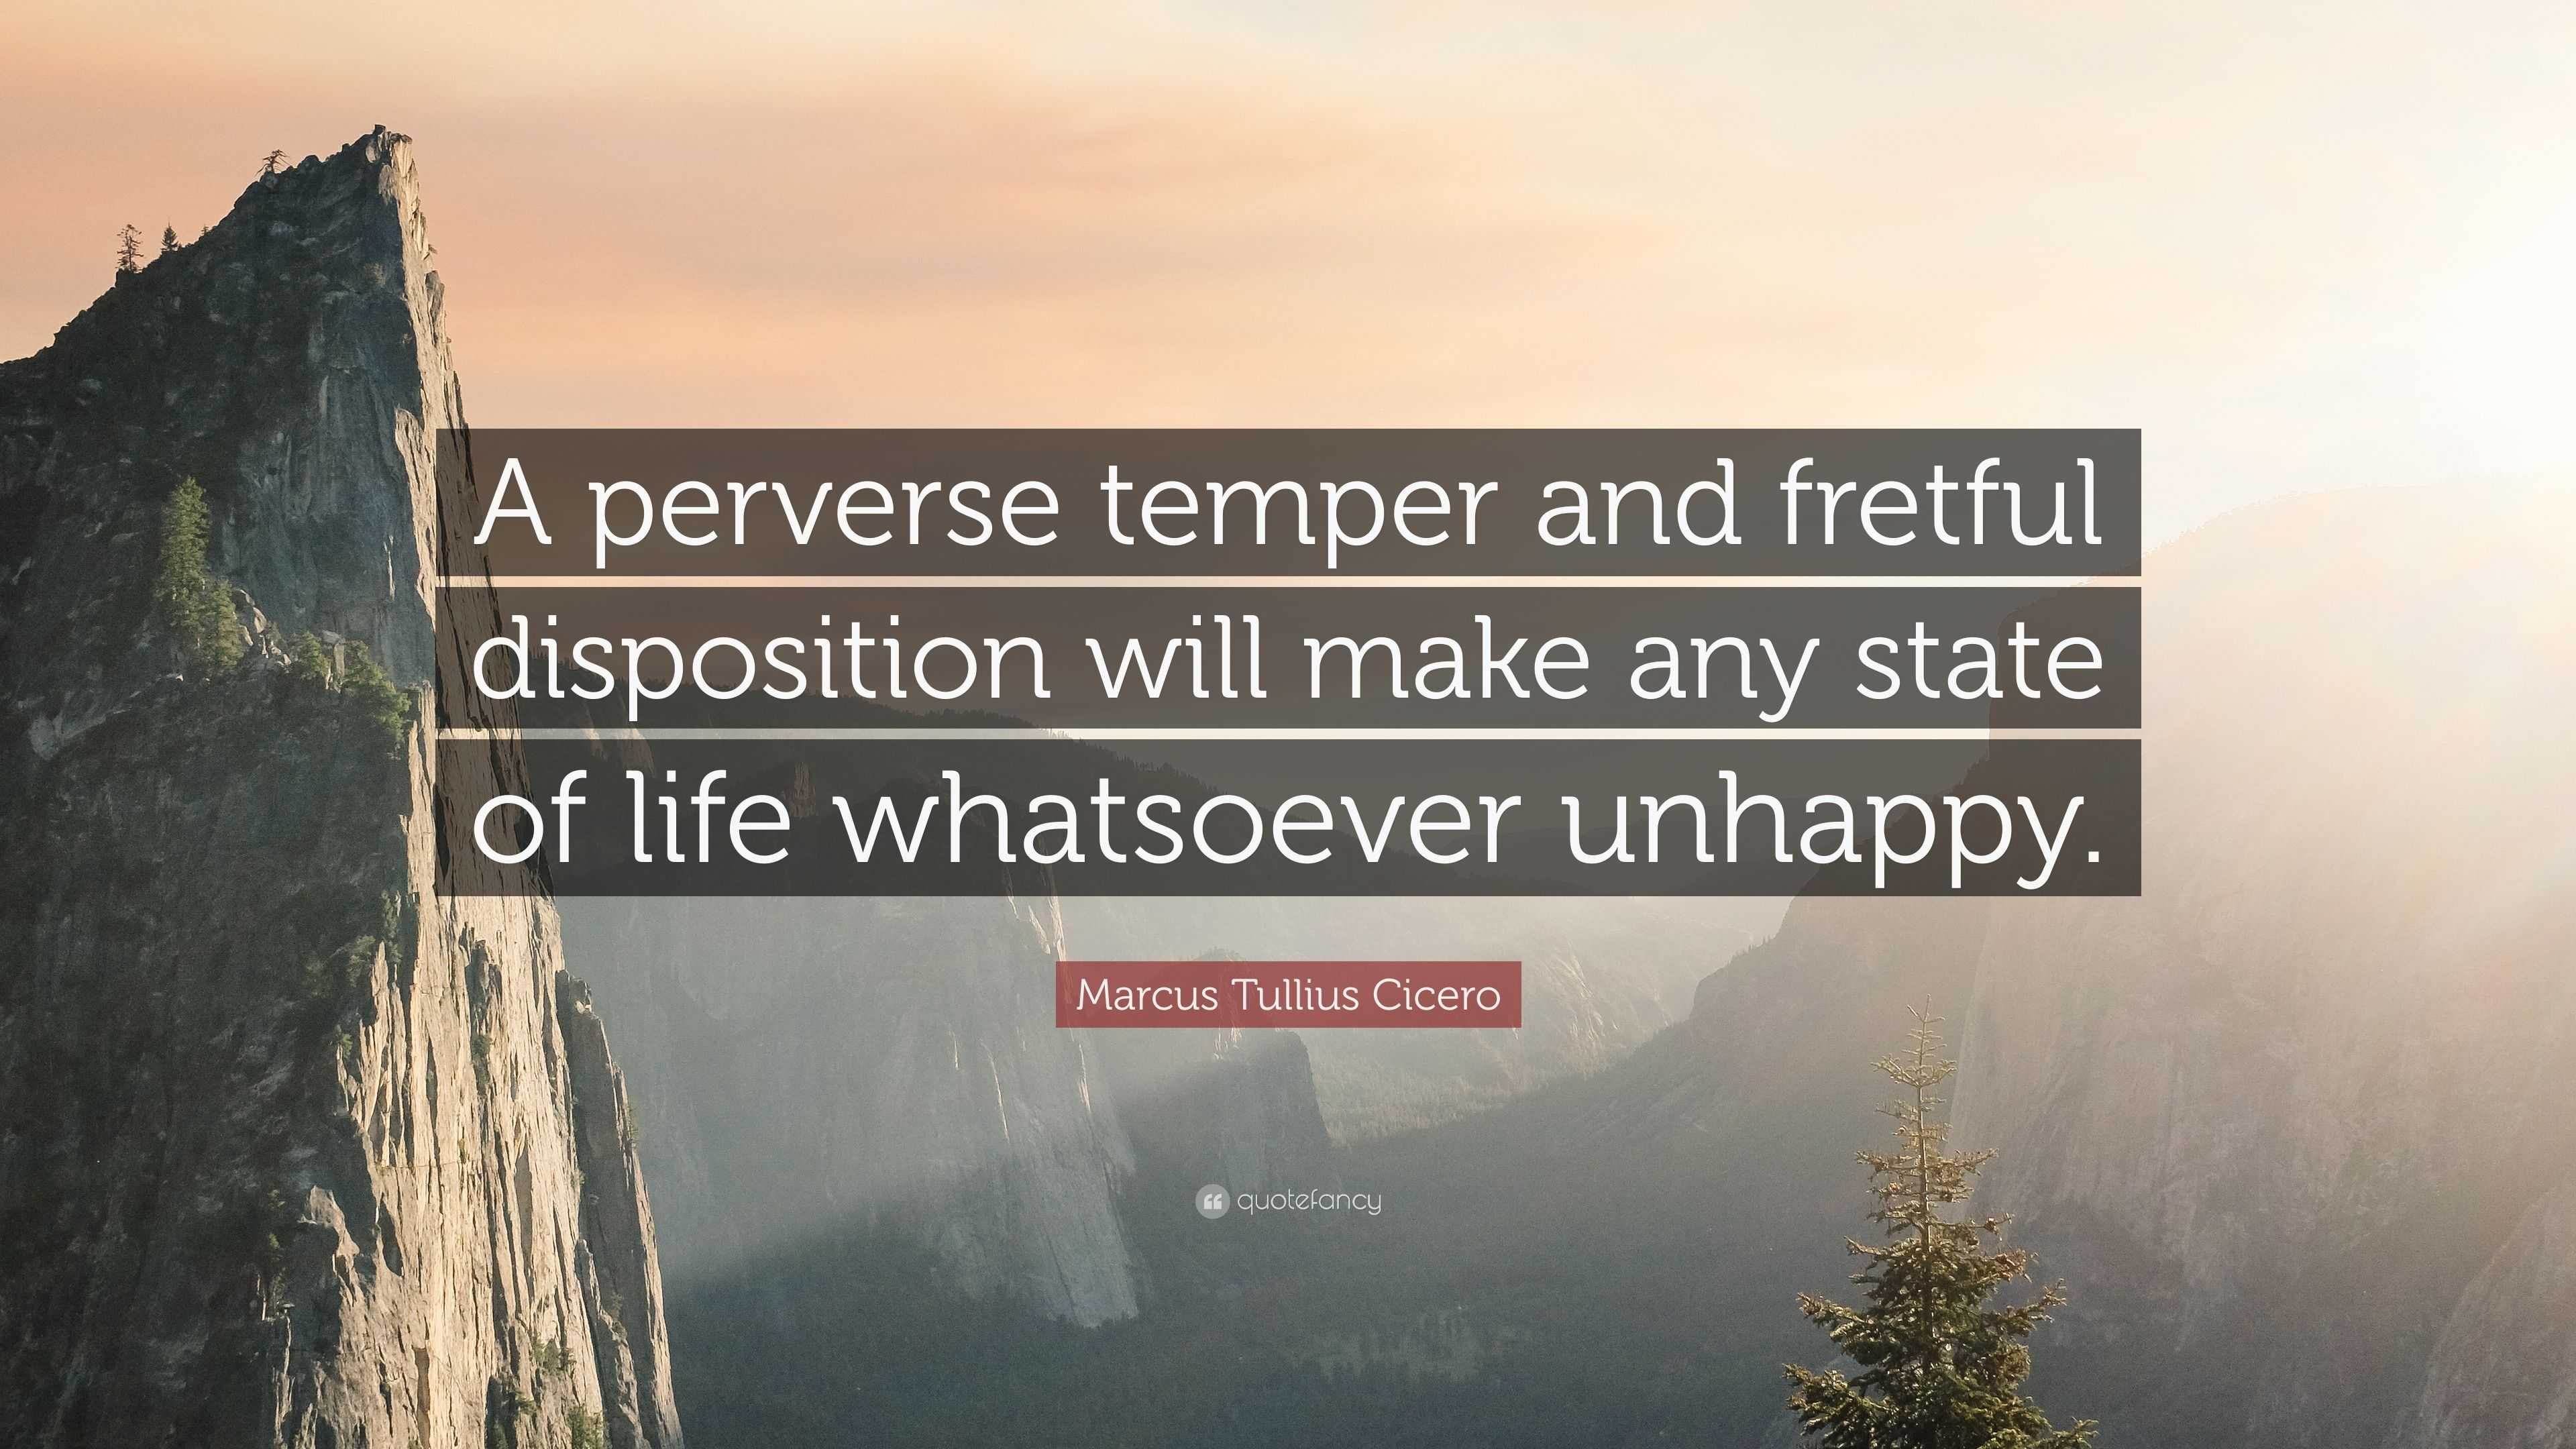 Marcus Tullius Cicero Quote: “A perverse temper and fretful disposition ...